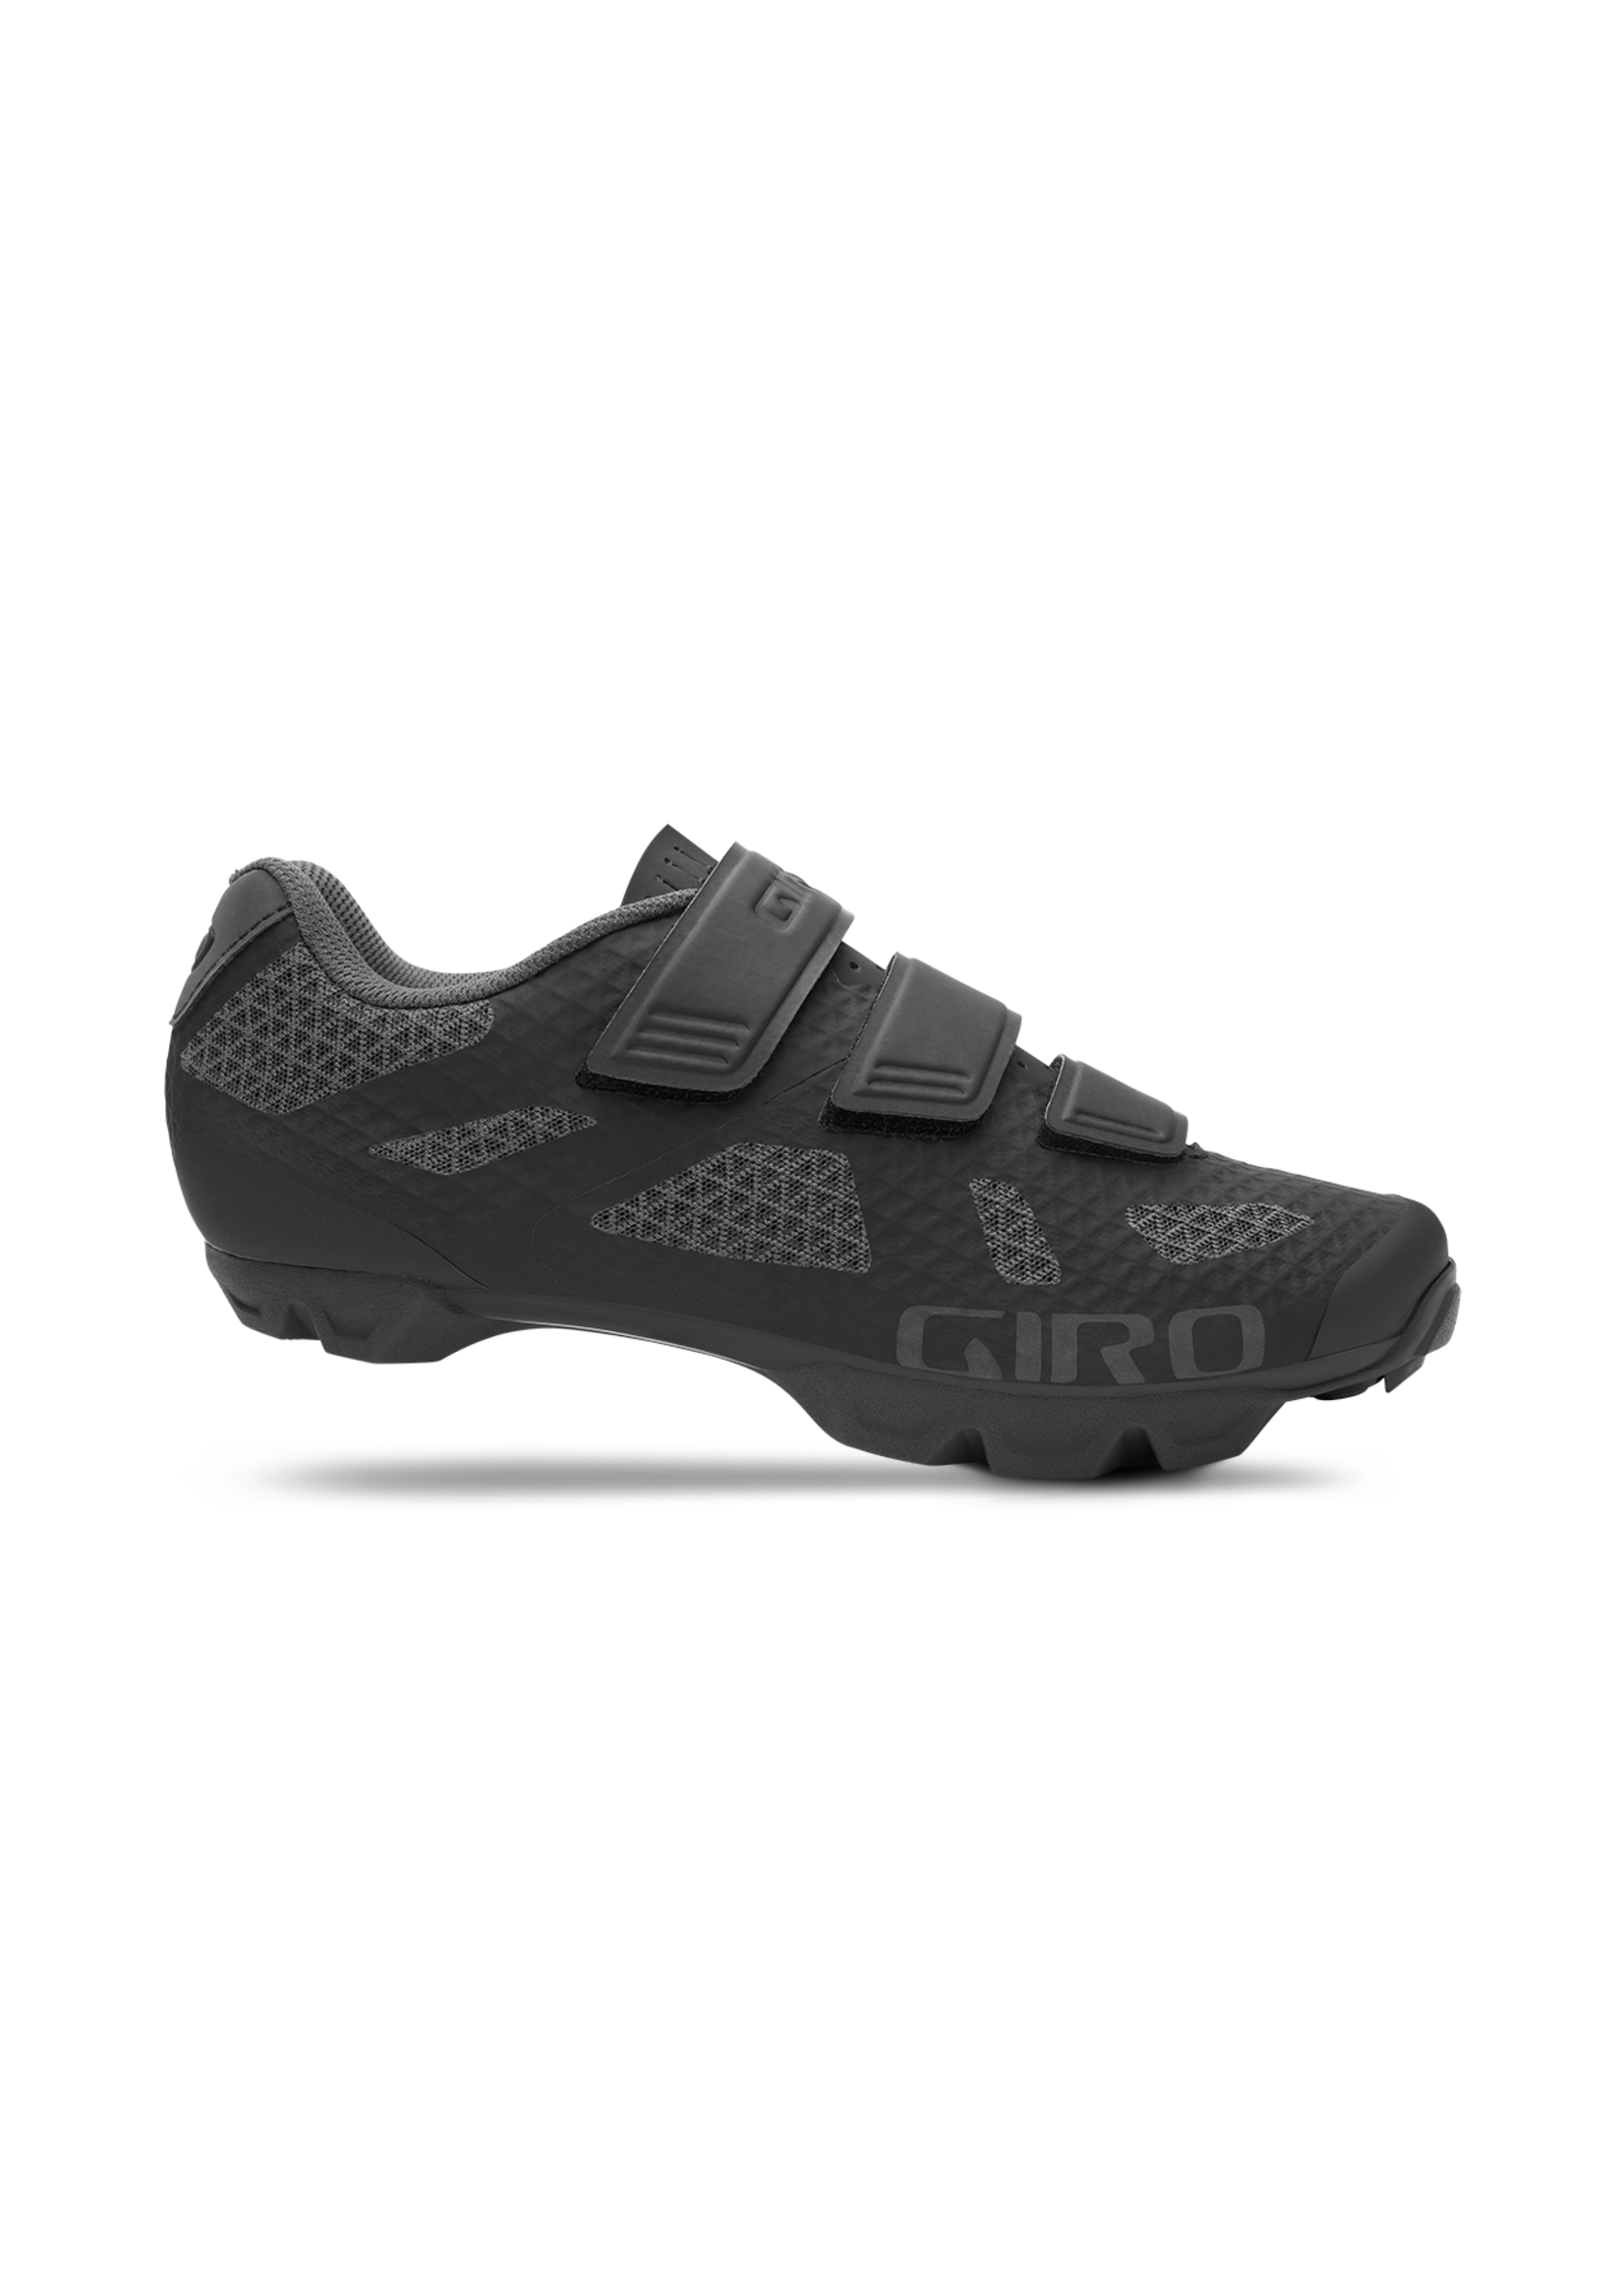 Giro Women's Ranger Cycling Shoe - Black